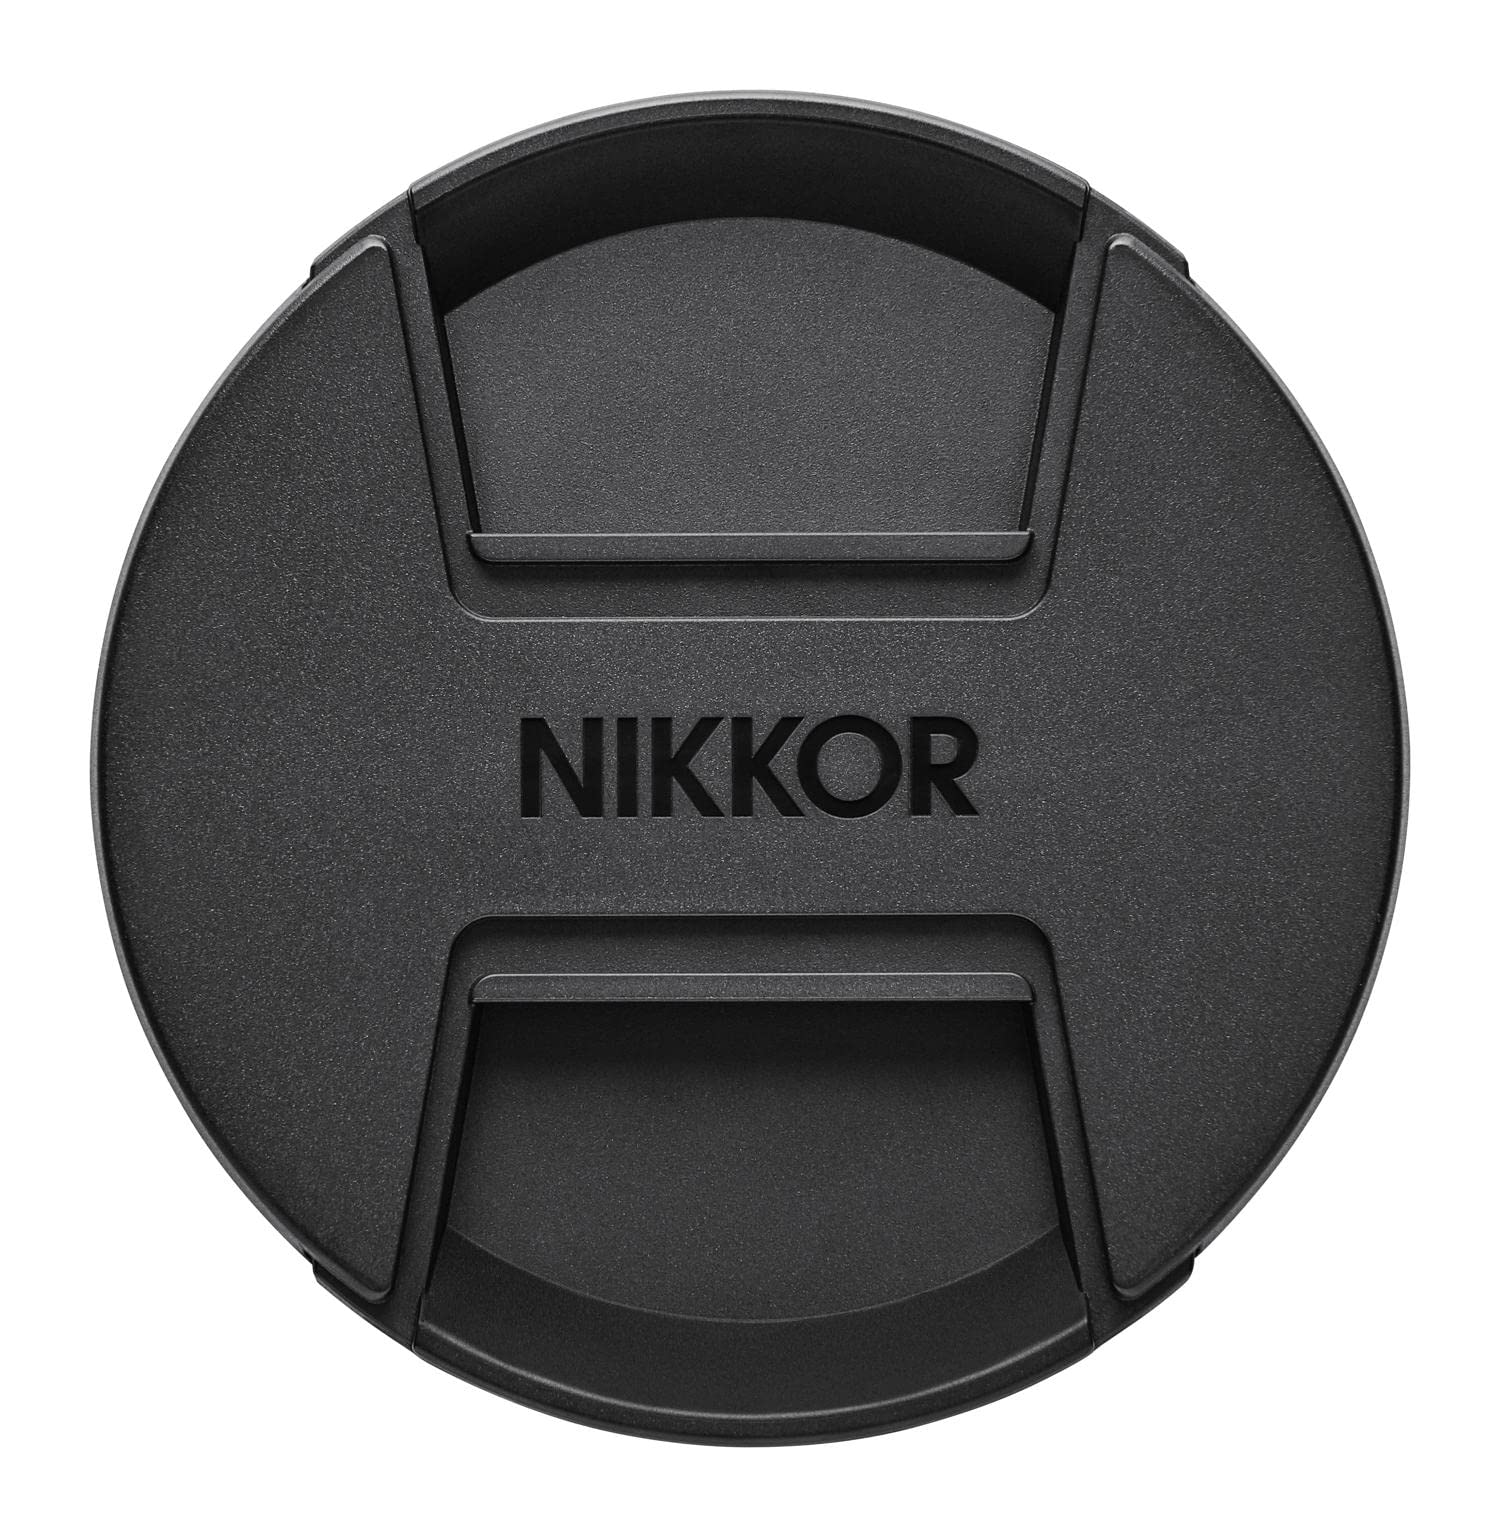 Nikon ニコン レンズキャップ95mm LC-95B (スプリング式) ブラック